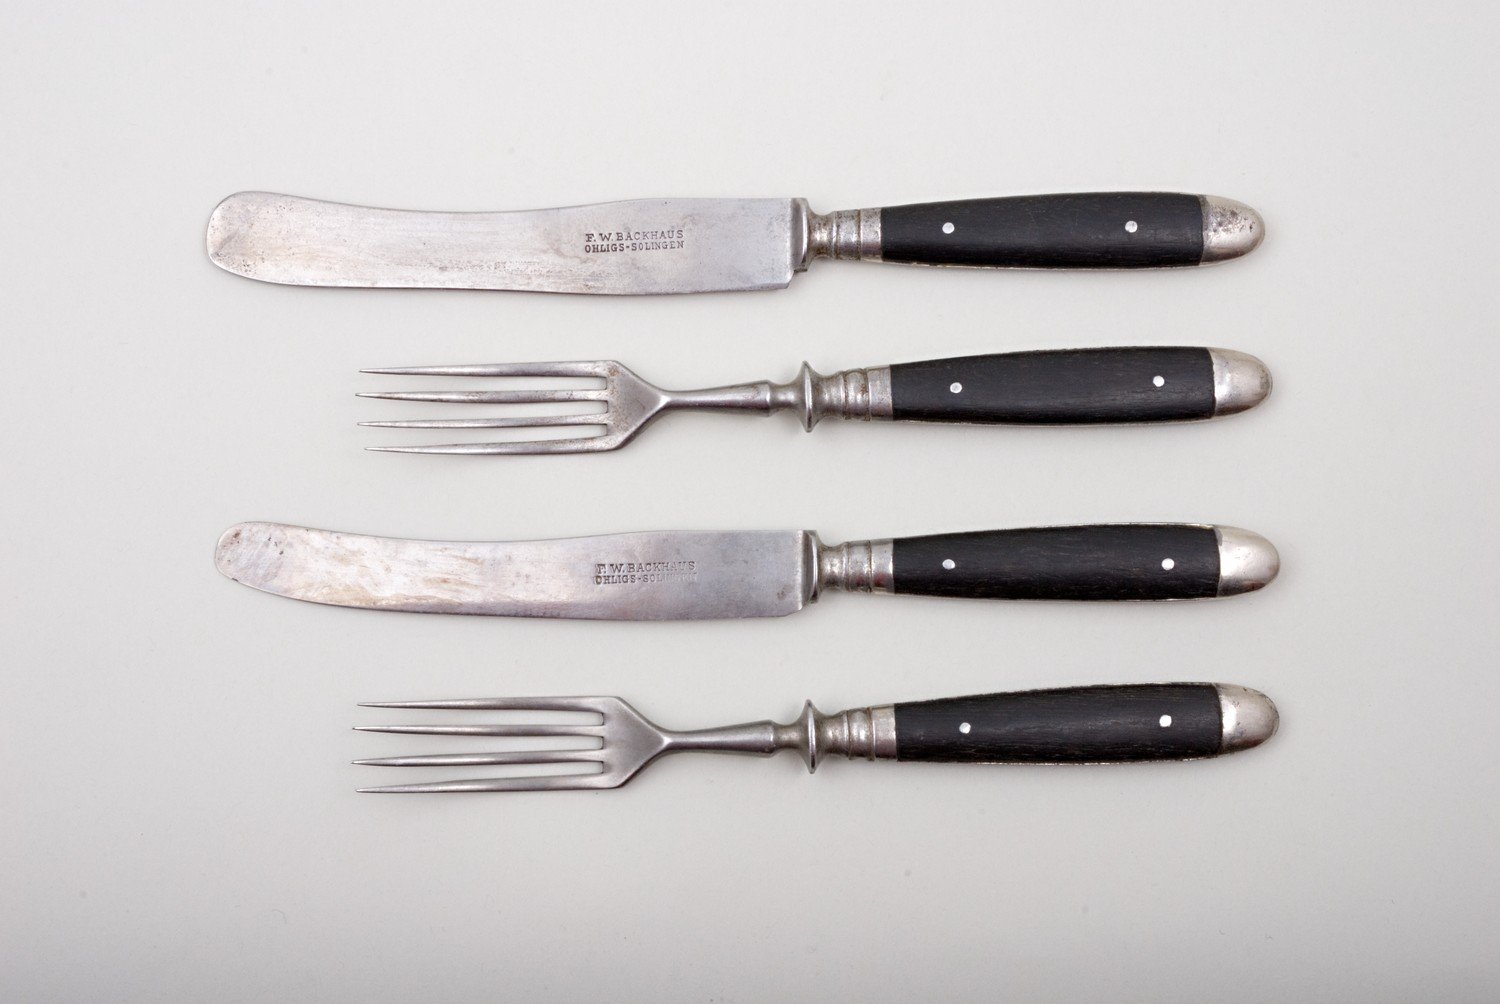 Zwei Essbestecke, bestehend aus Messer und Gabel (Stiftung Domäne Dahlem - Landgut und Museum, Weiternutzung nur mit Genehmigung des Museums CC BY-NC-SA)